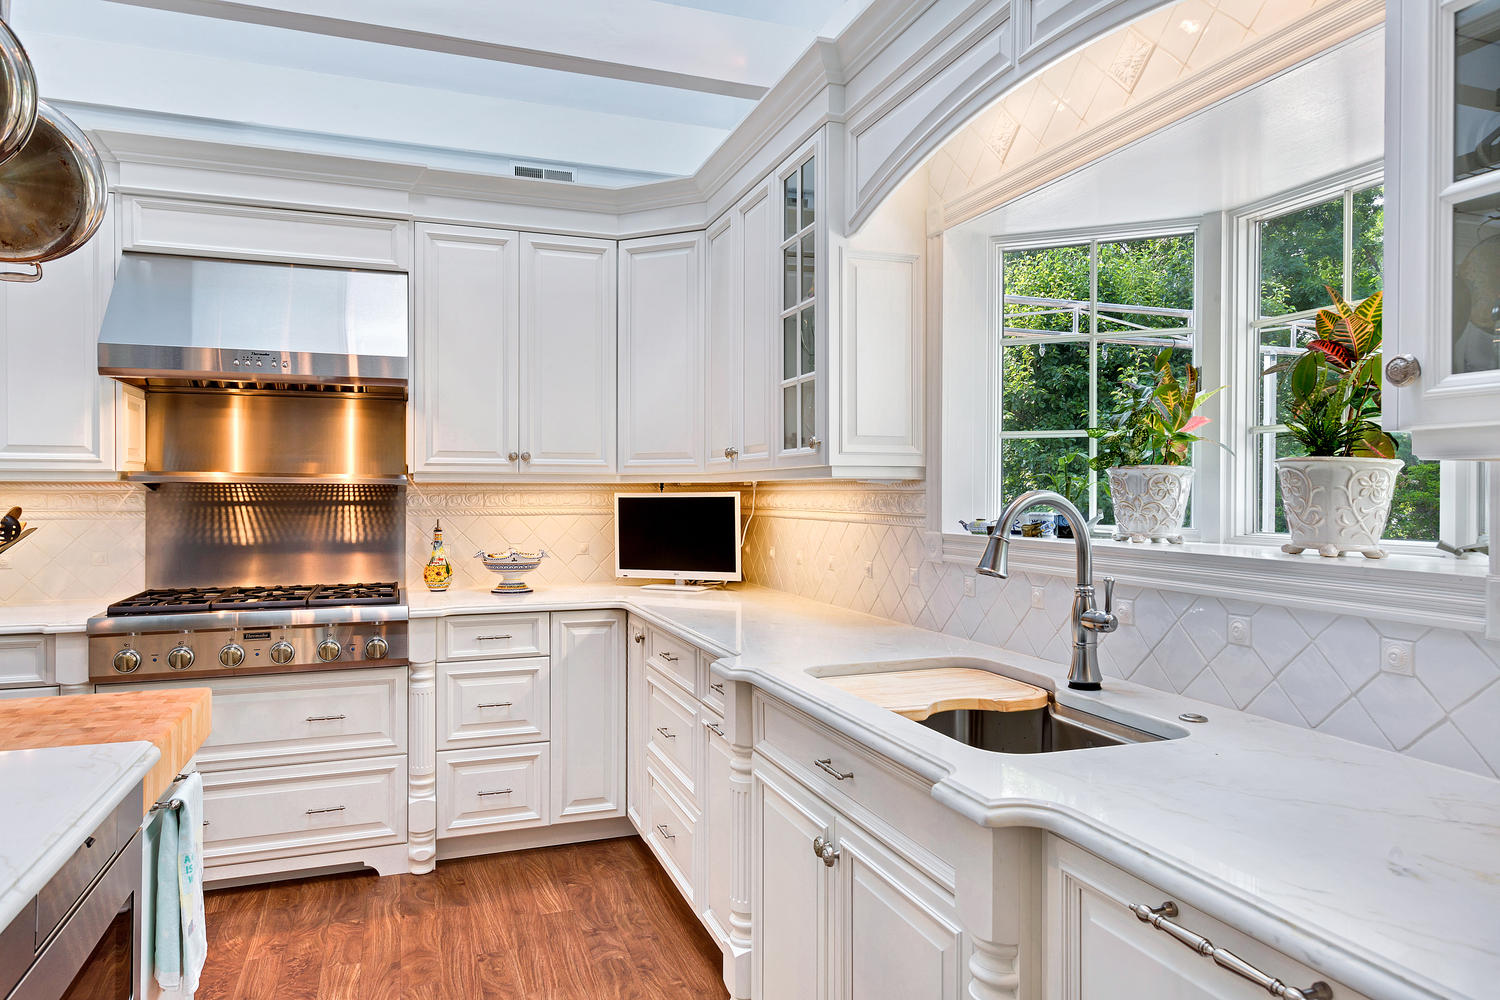 Luxury White Kitchen Avon NJ by Design Line Kitchens